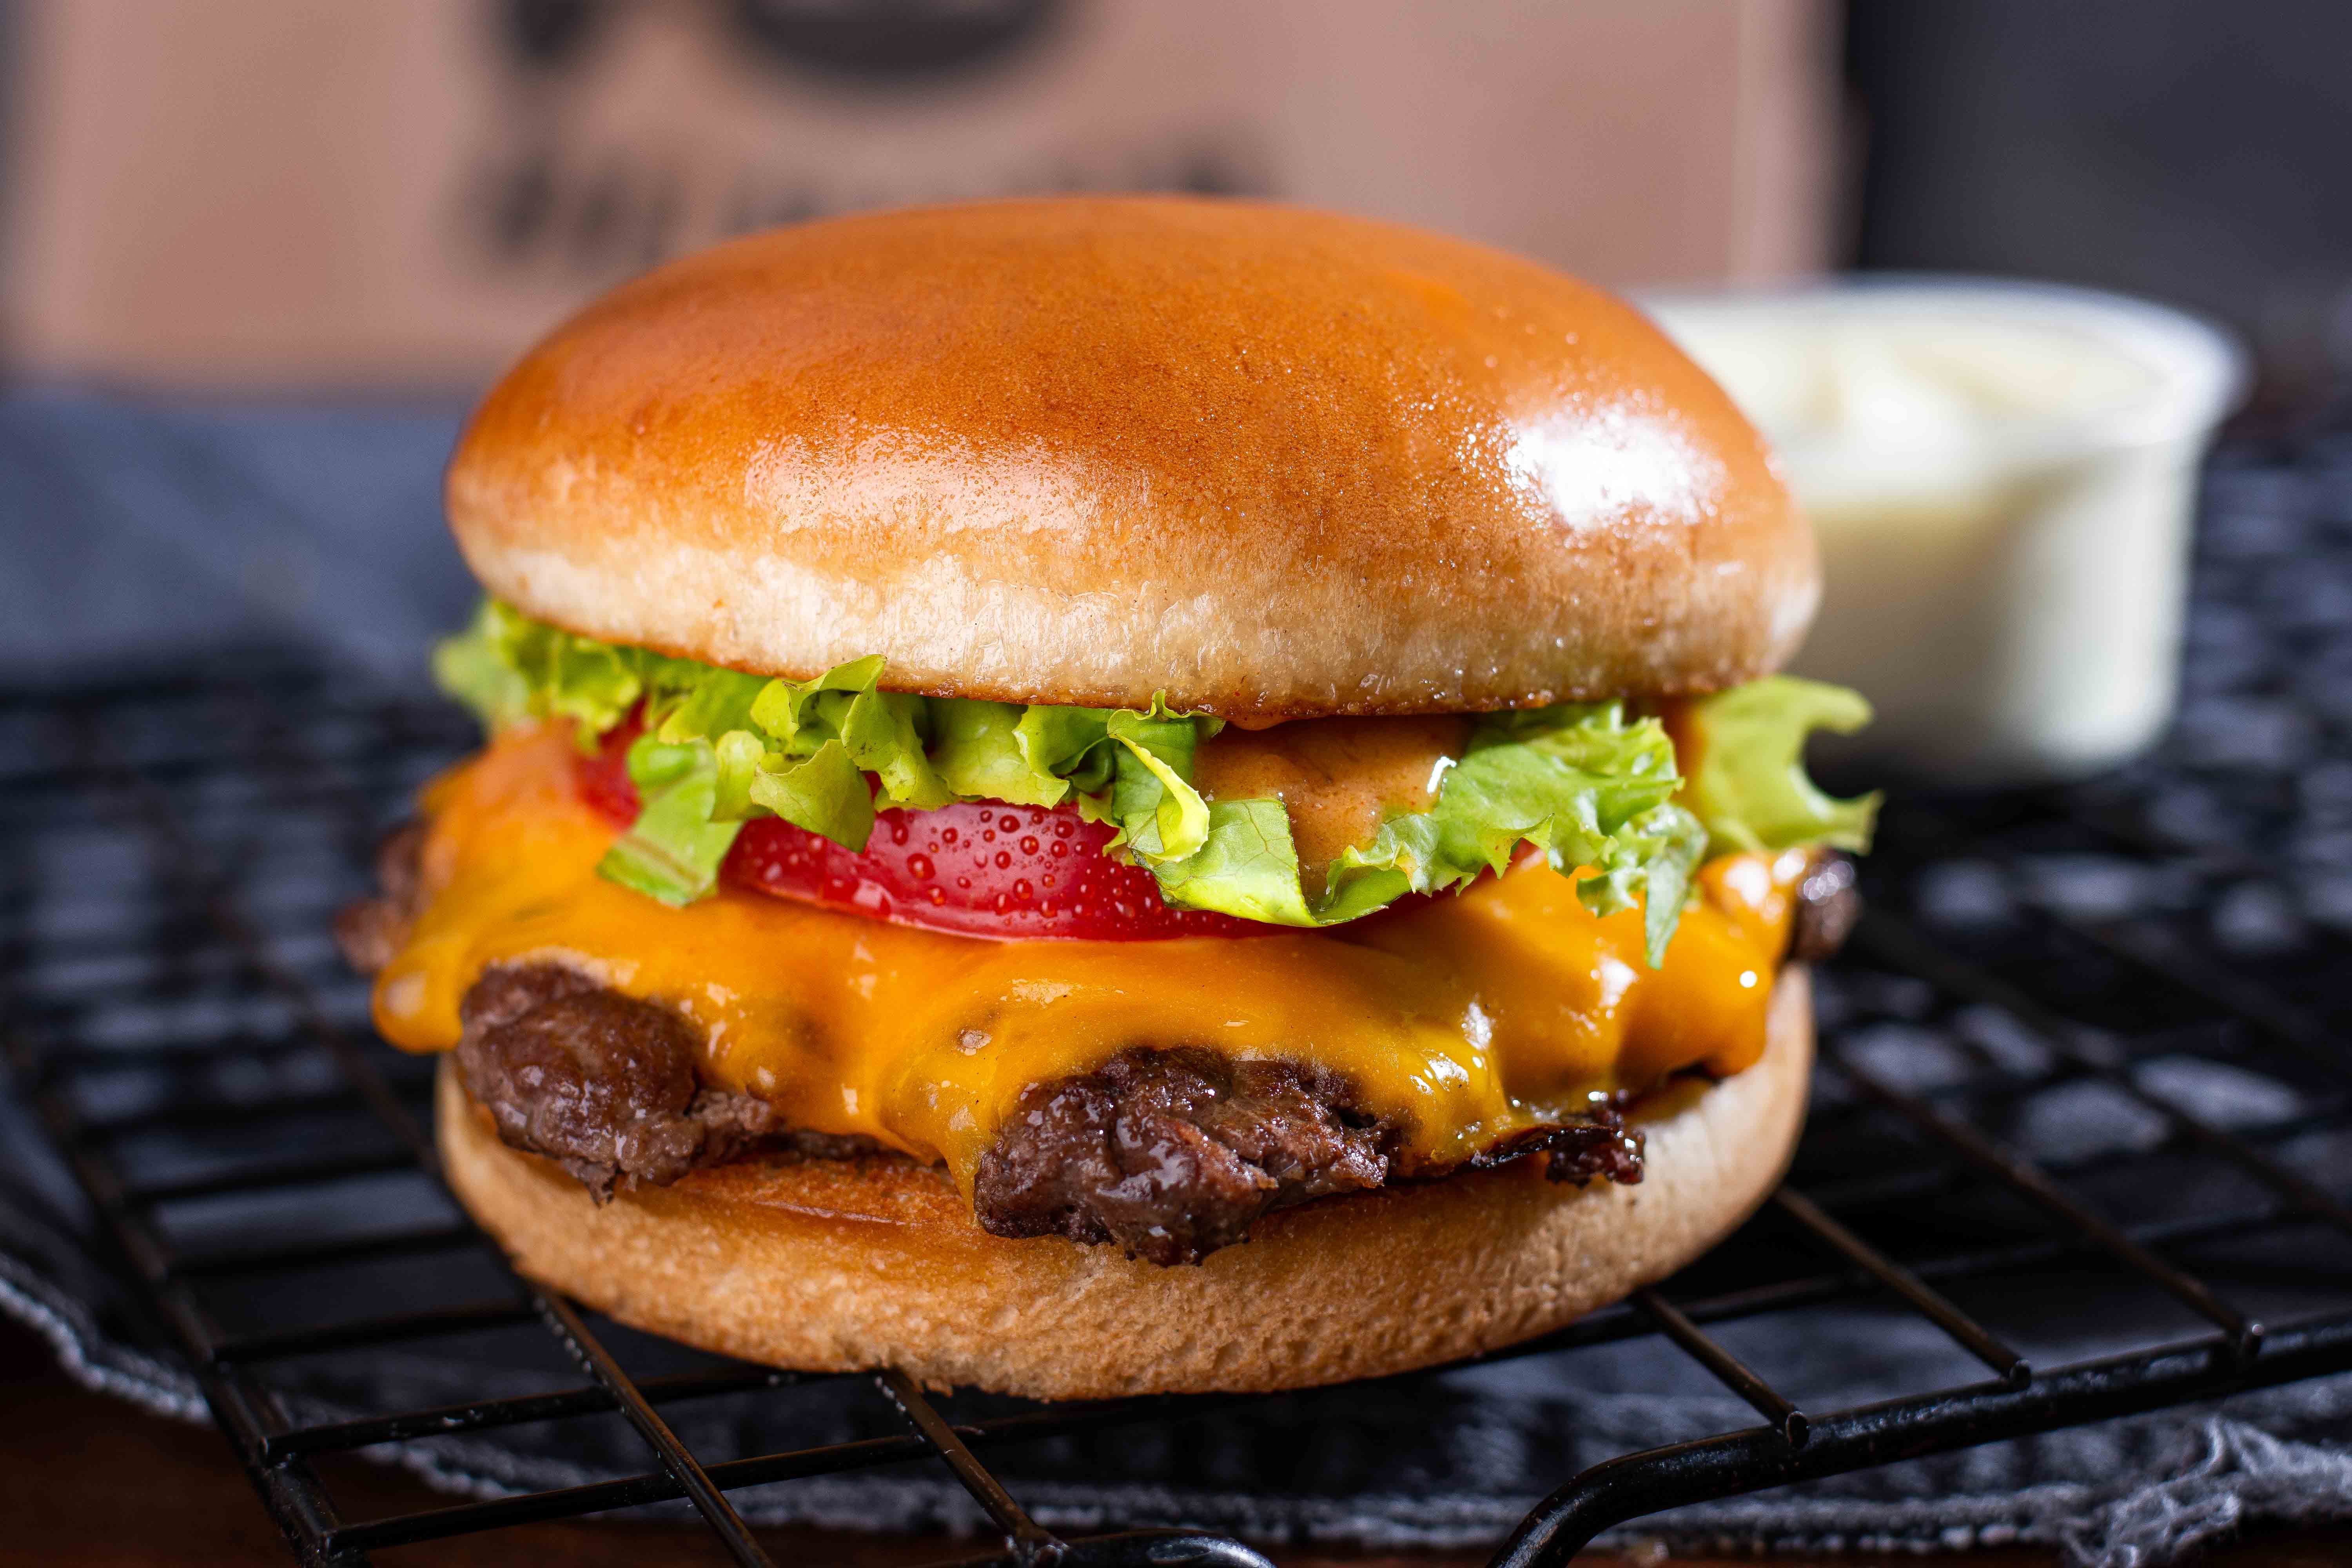 Mage Burger pertence aos sócios da lanchonete Vamp, famosa no Norte do ES. Veja também: cestas para o Dia dos Namorados e desafio culinário no Instagram